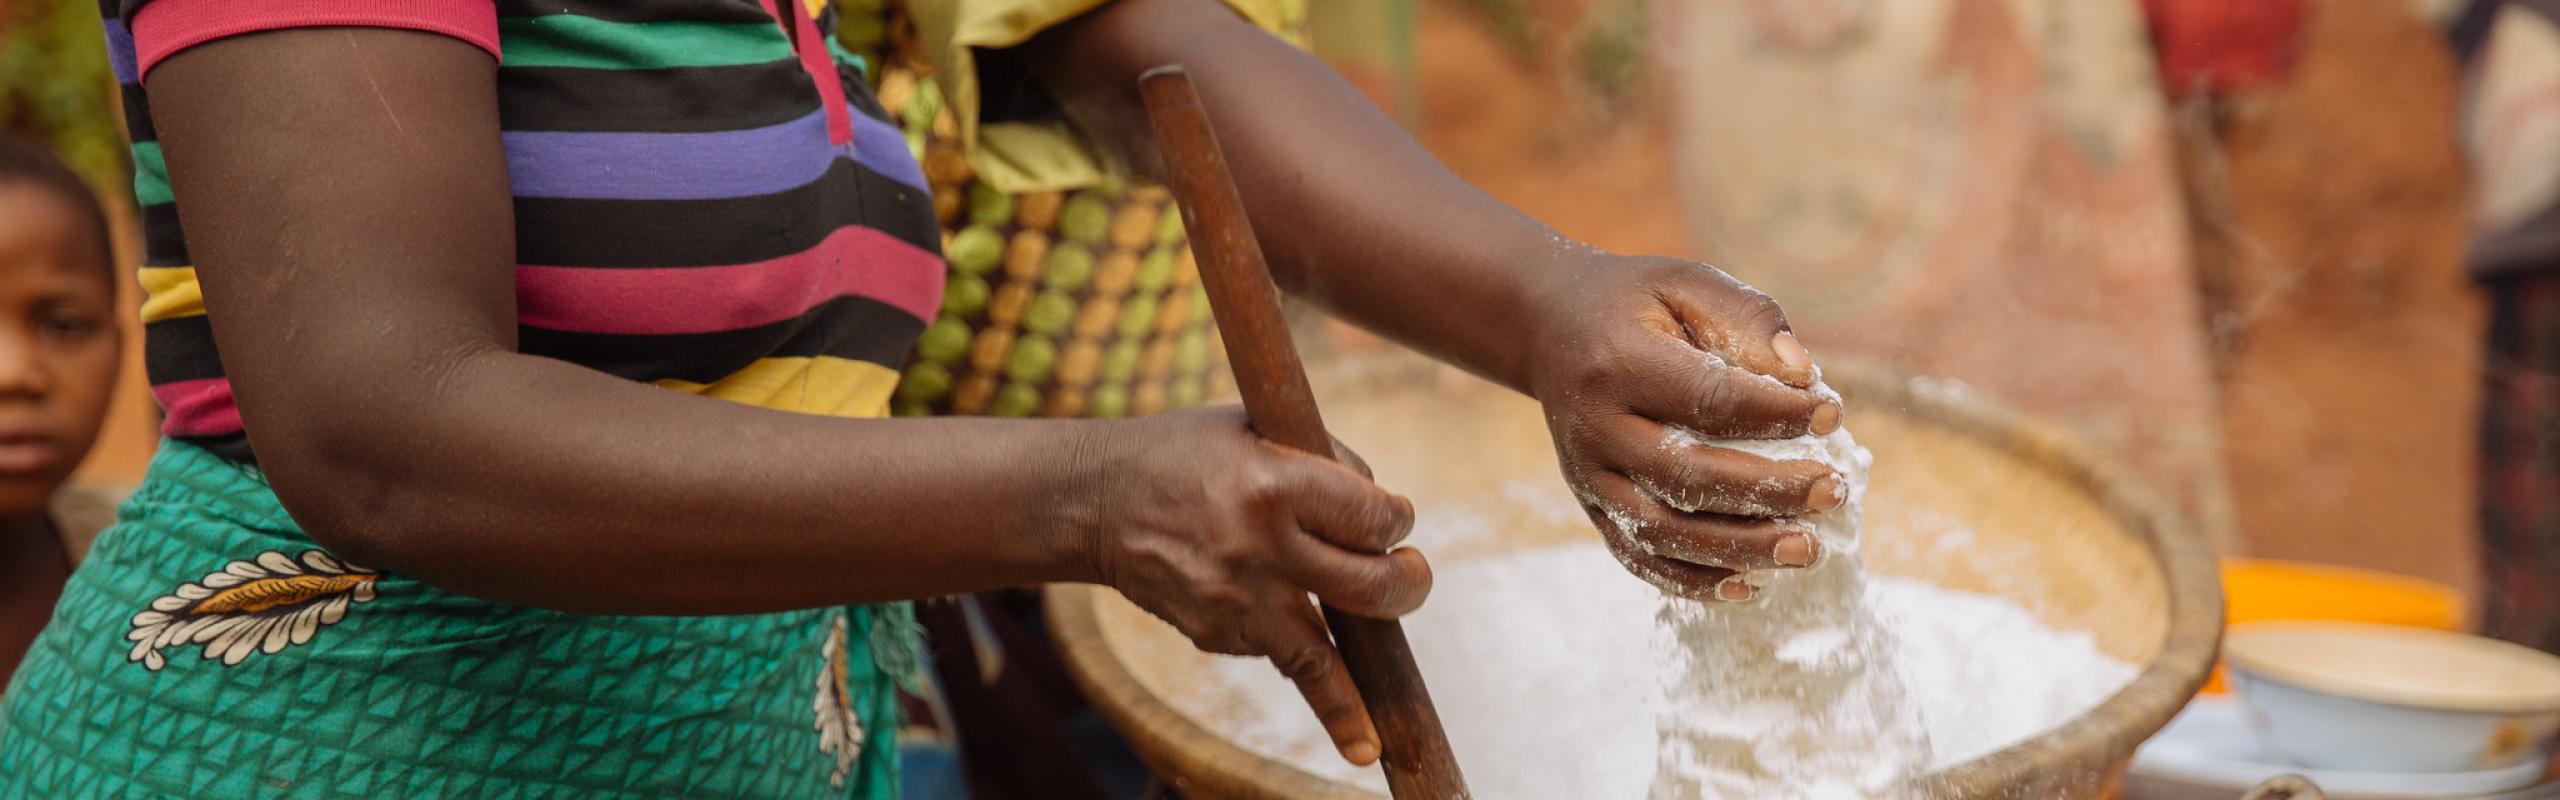  Des femmes préparant un repas commun tamisent à la main de la farine de maïs dans une marmite dans un village du Malawi. La hausse des prix mondiaux du maïs pourrait avoir un impact sur la population pauvre du pays.